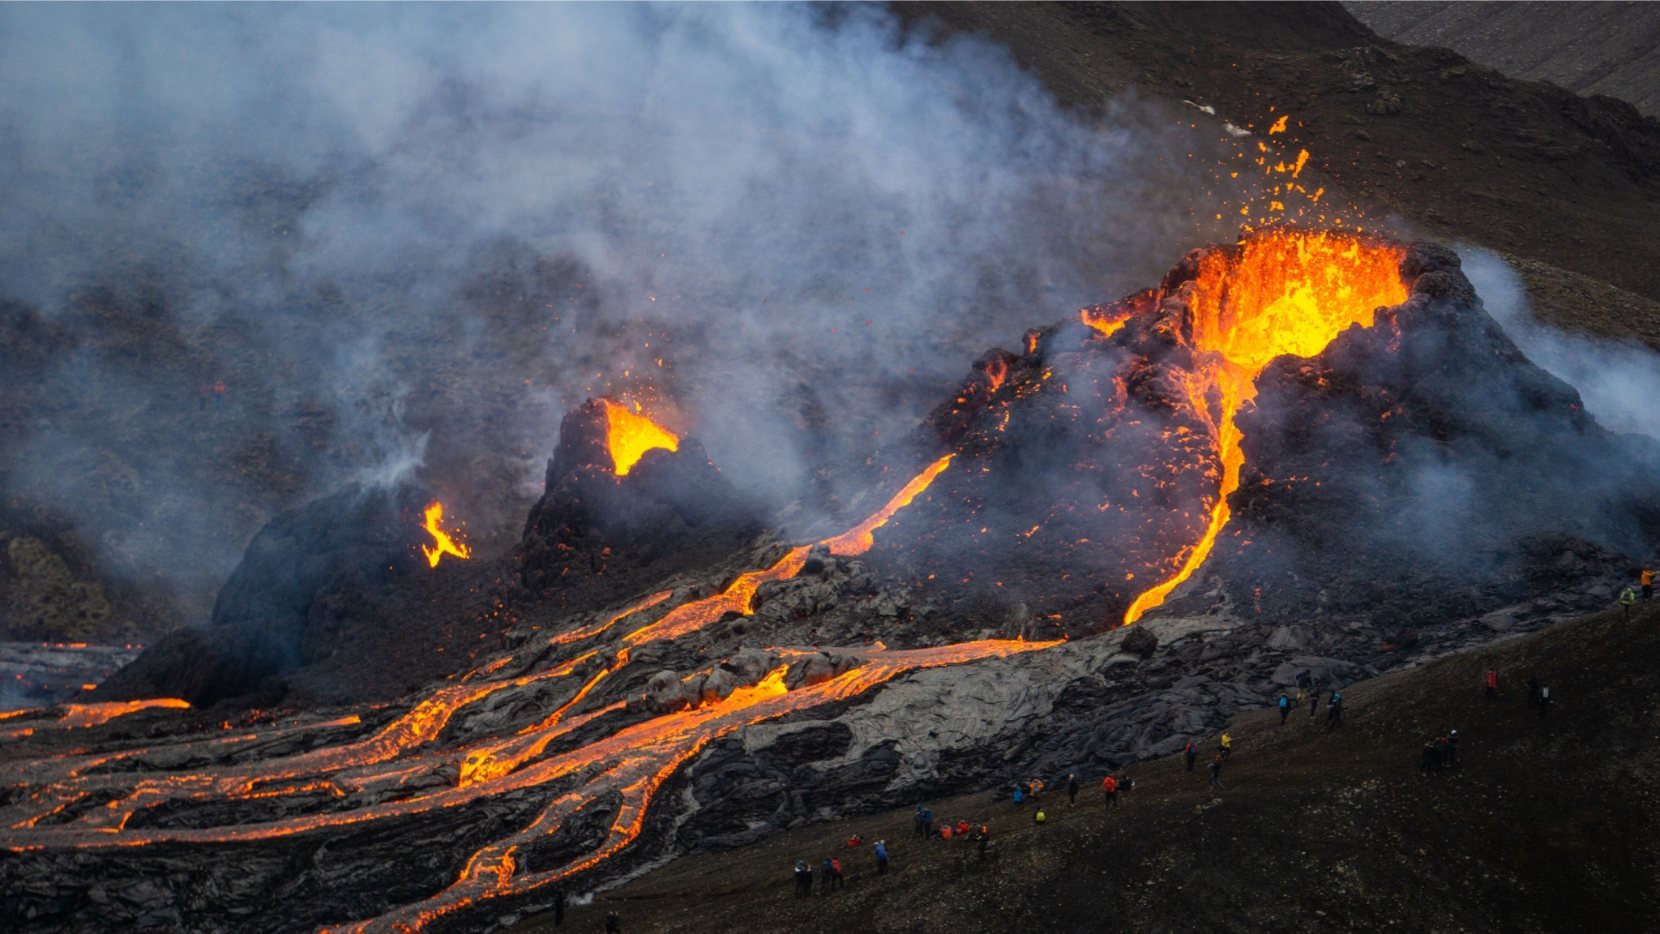 Iceland volcanic eruption image.